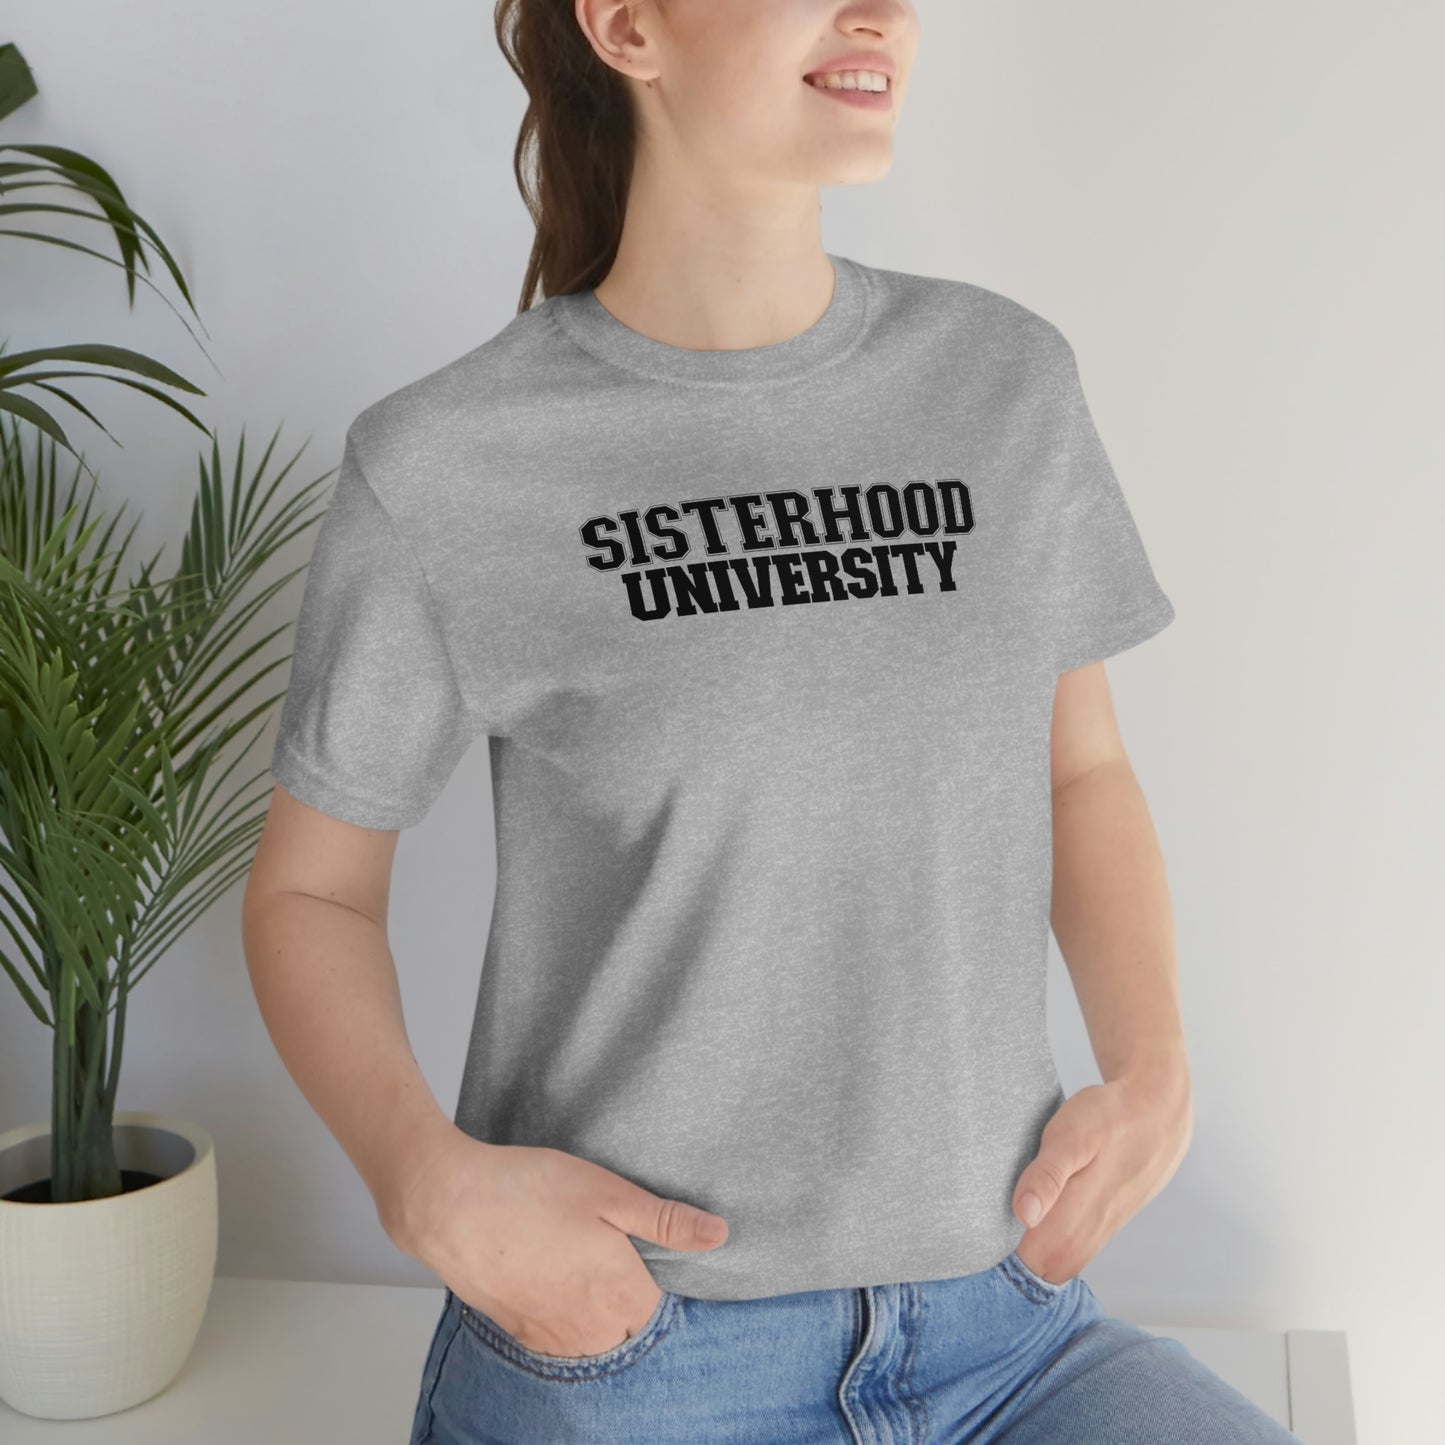 Sisterhood University tee